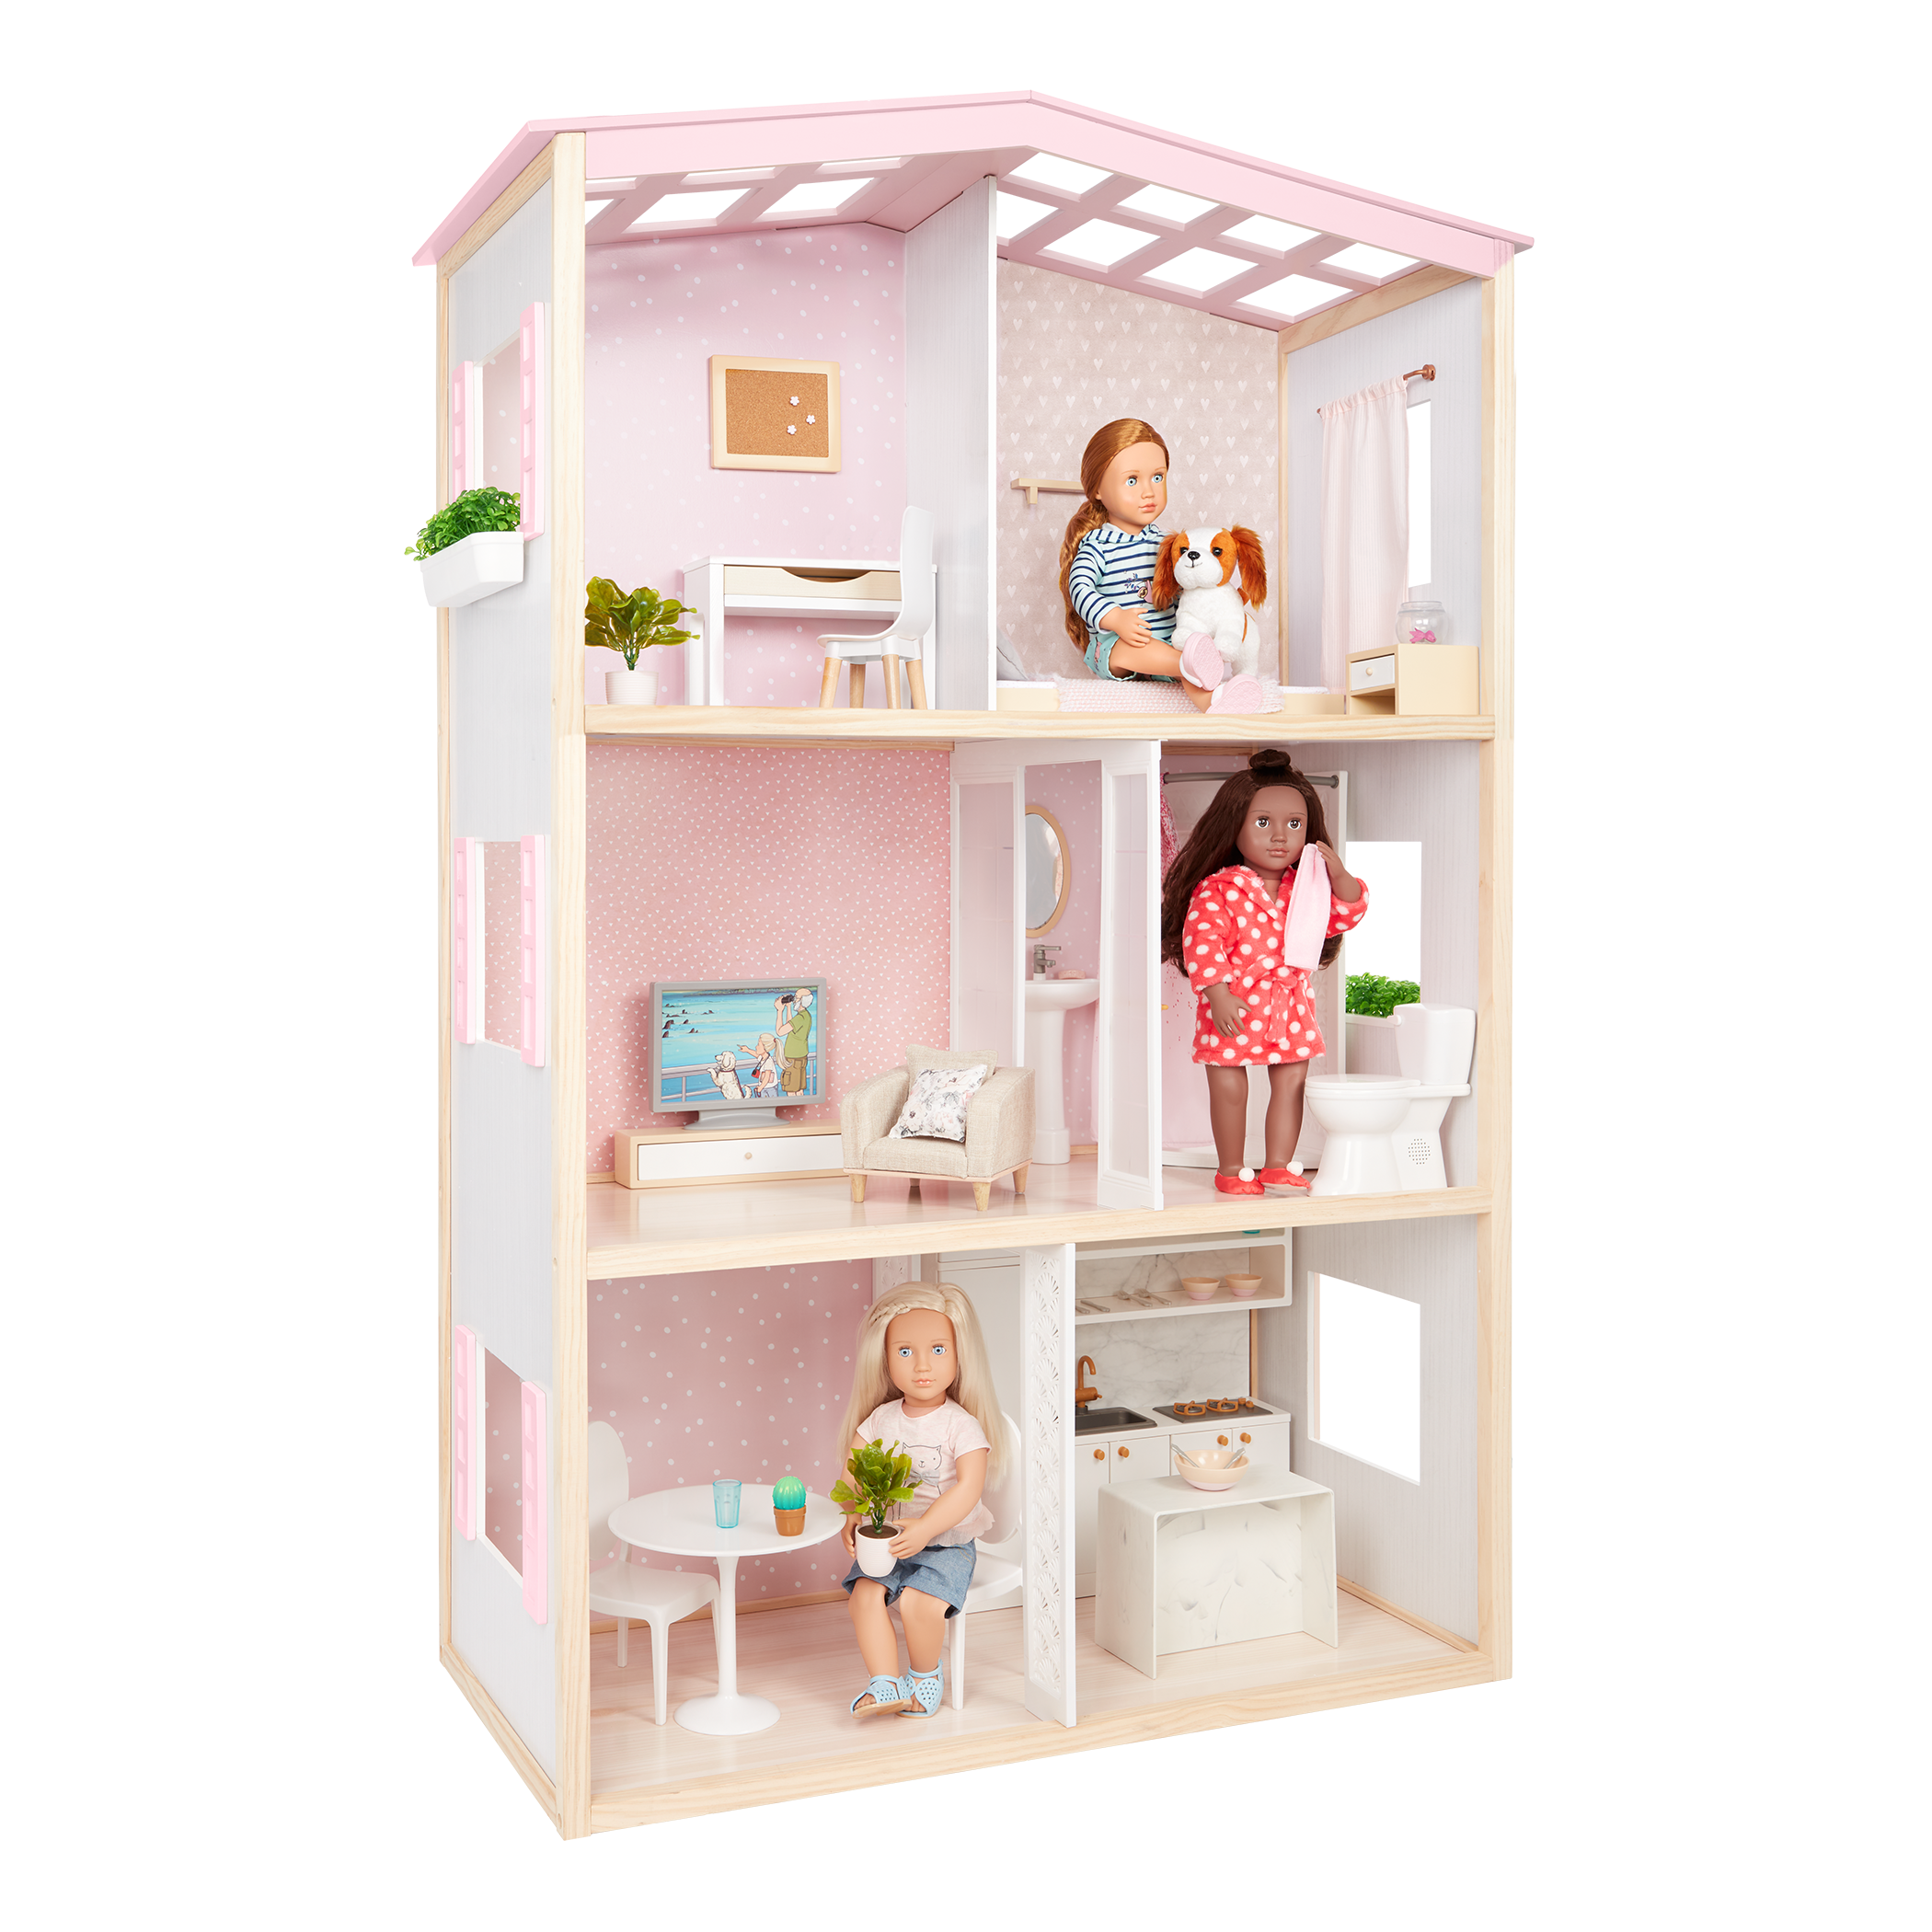 Dollhouse for 18-inch dolls